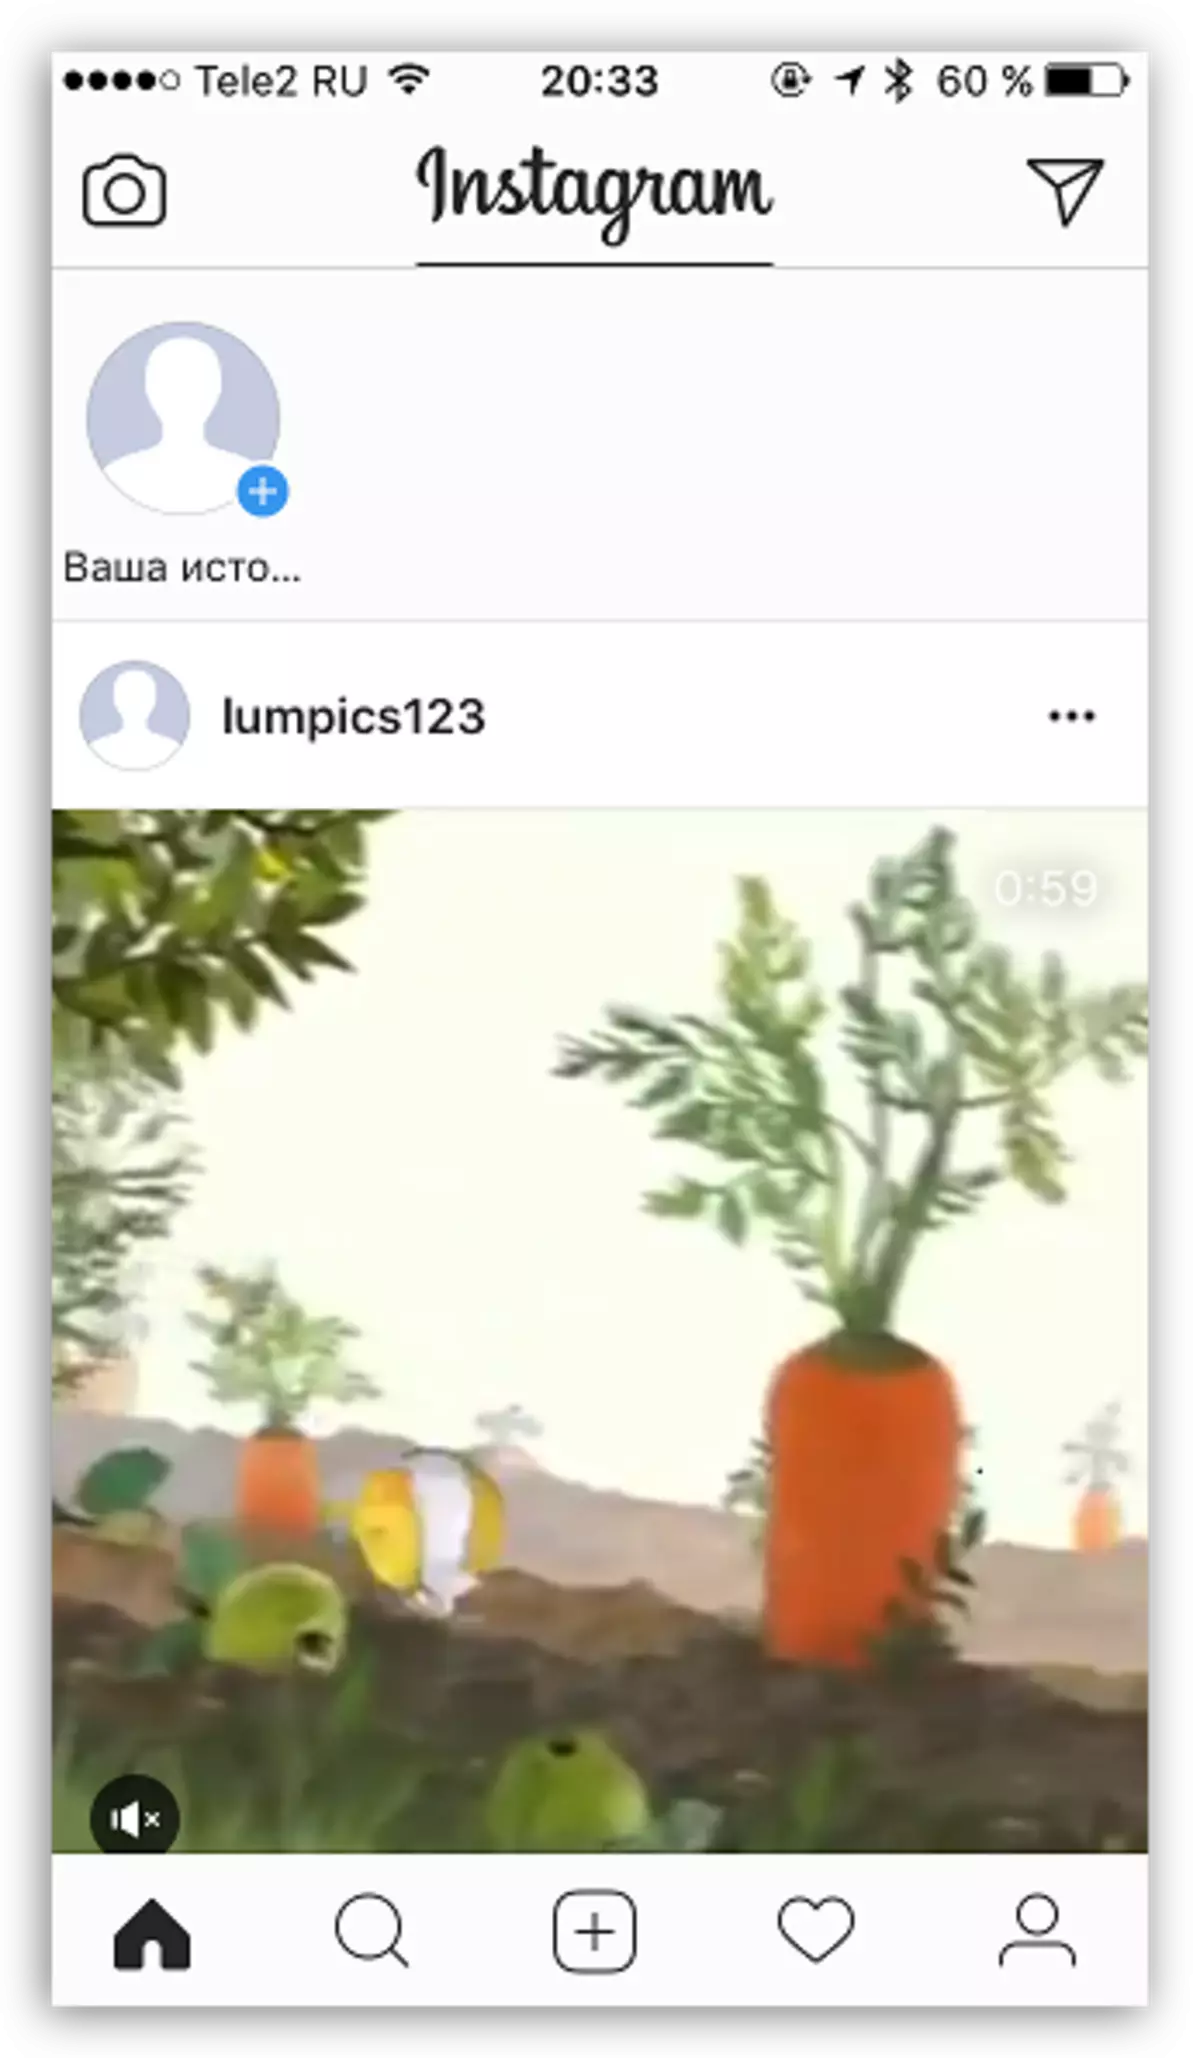 Objavljen video v Instagramu iz računalnika